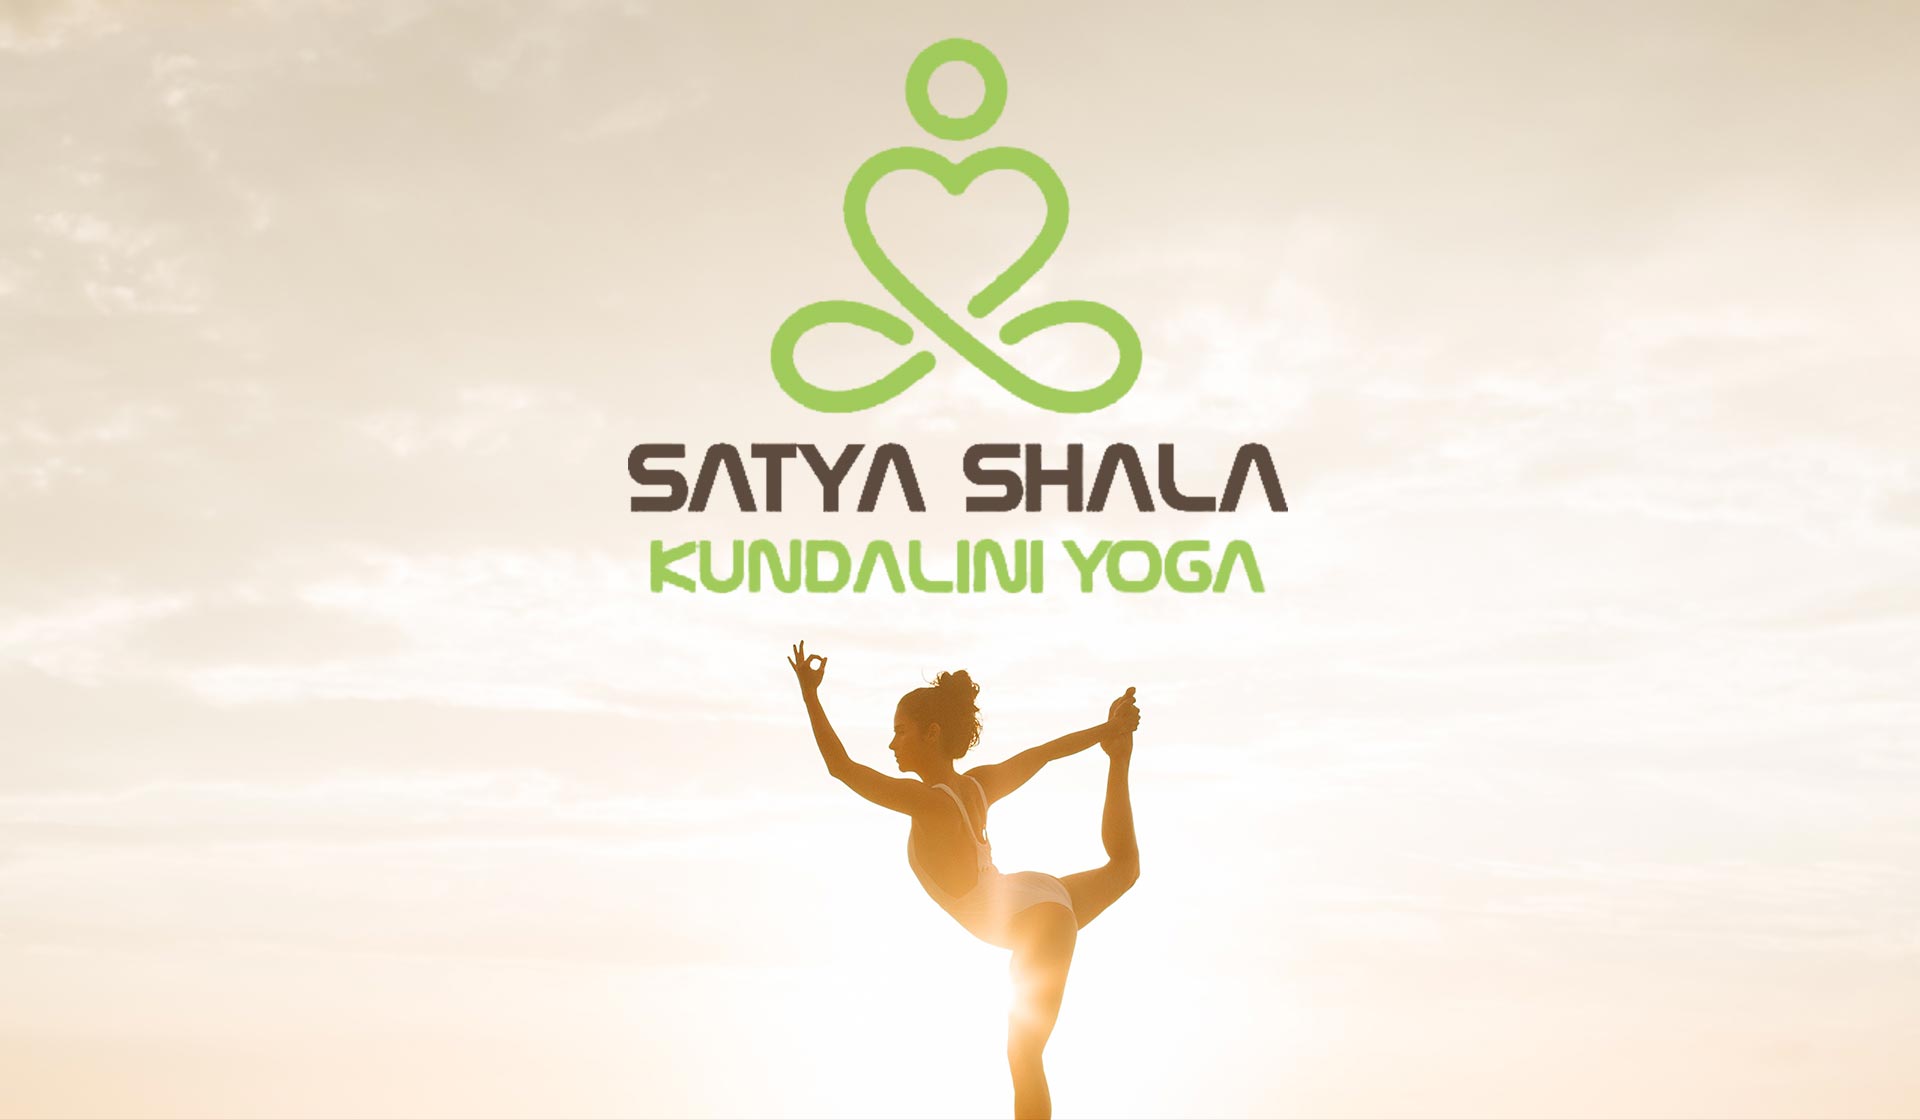 Satya Shala Kundalini Yoga